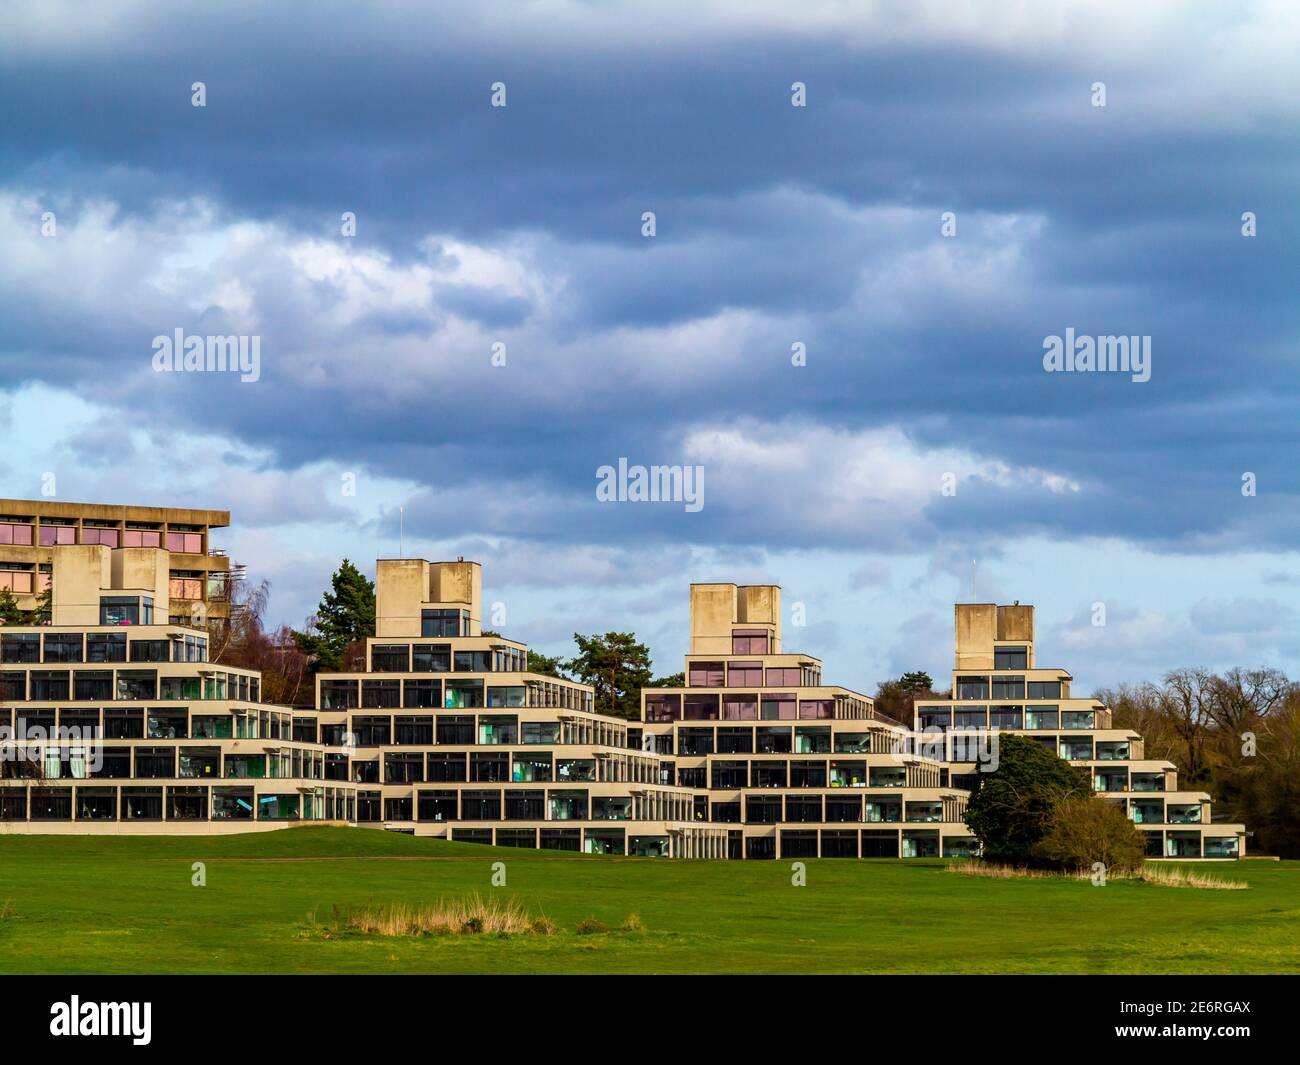 Le campus de l'Université d'East Anglia à Norwich Angleterre Royaume-Uni conçu par Denys Lasdun et construit de 1962 à 1968 avec des terrasses en béton de style ziggurat. Banque D'Images